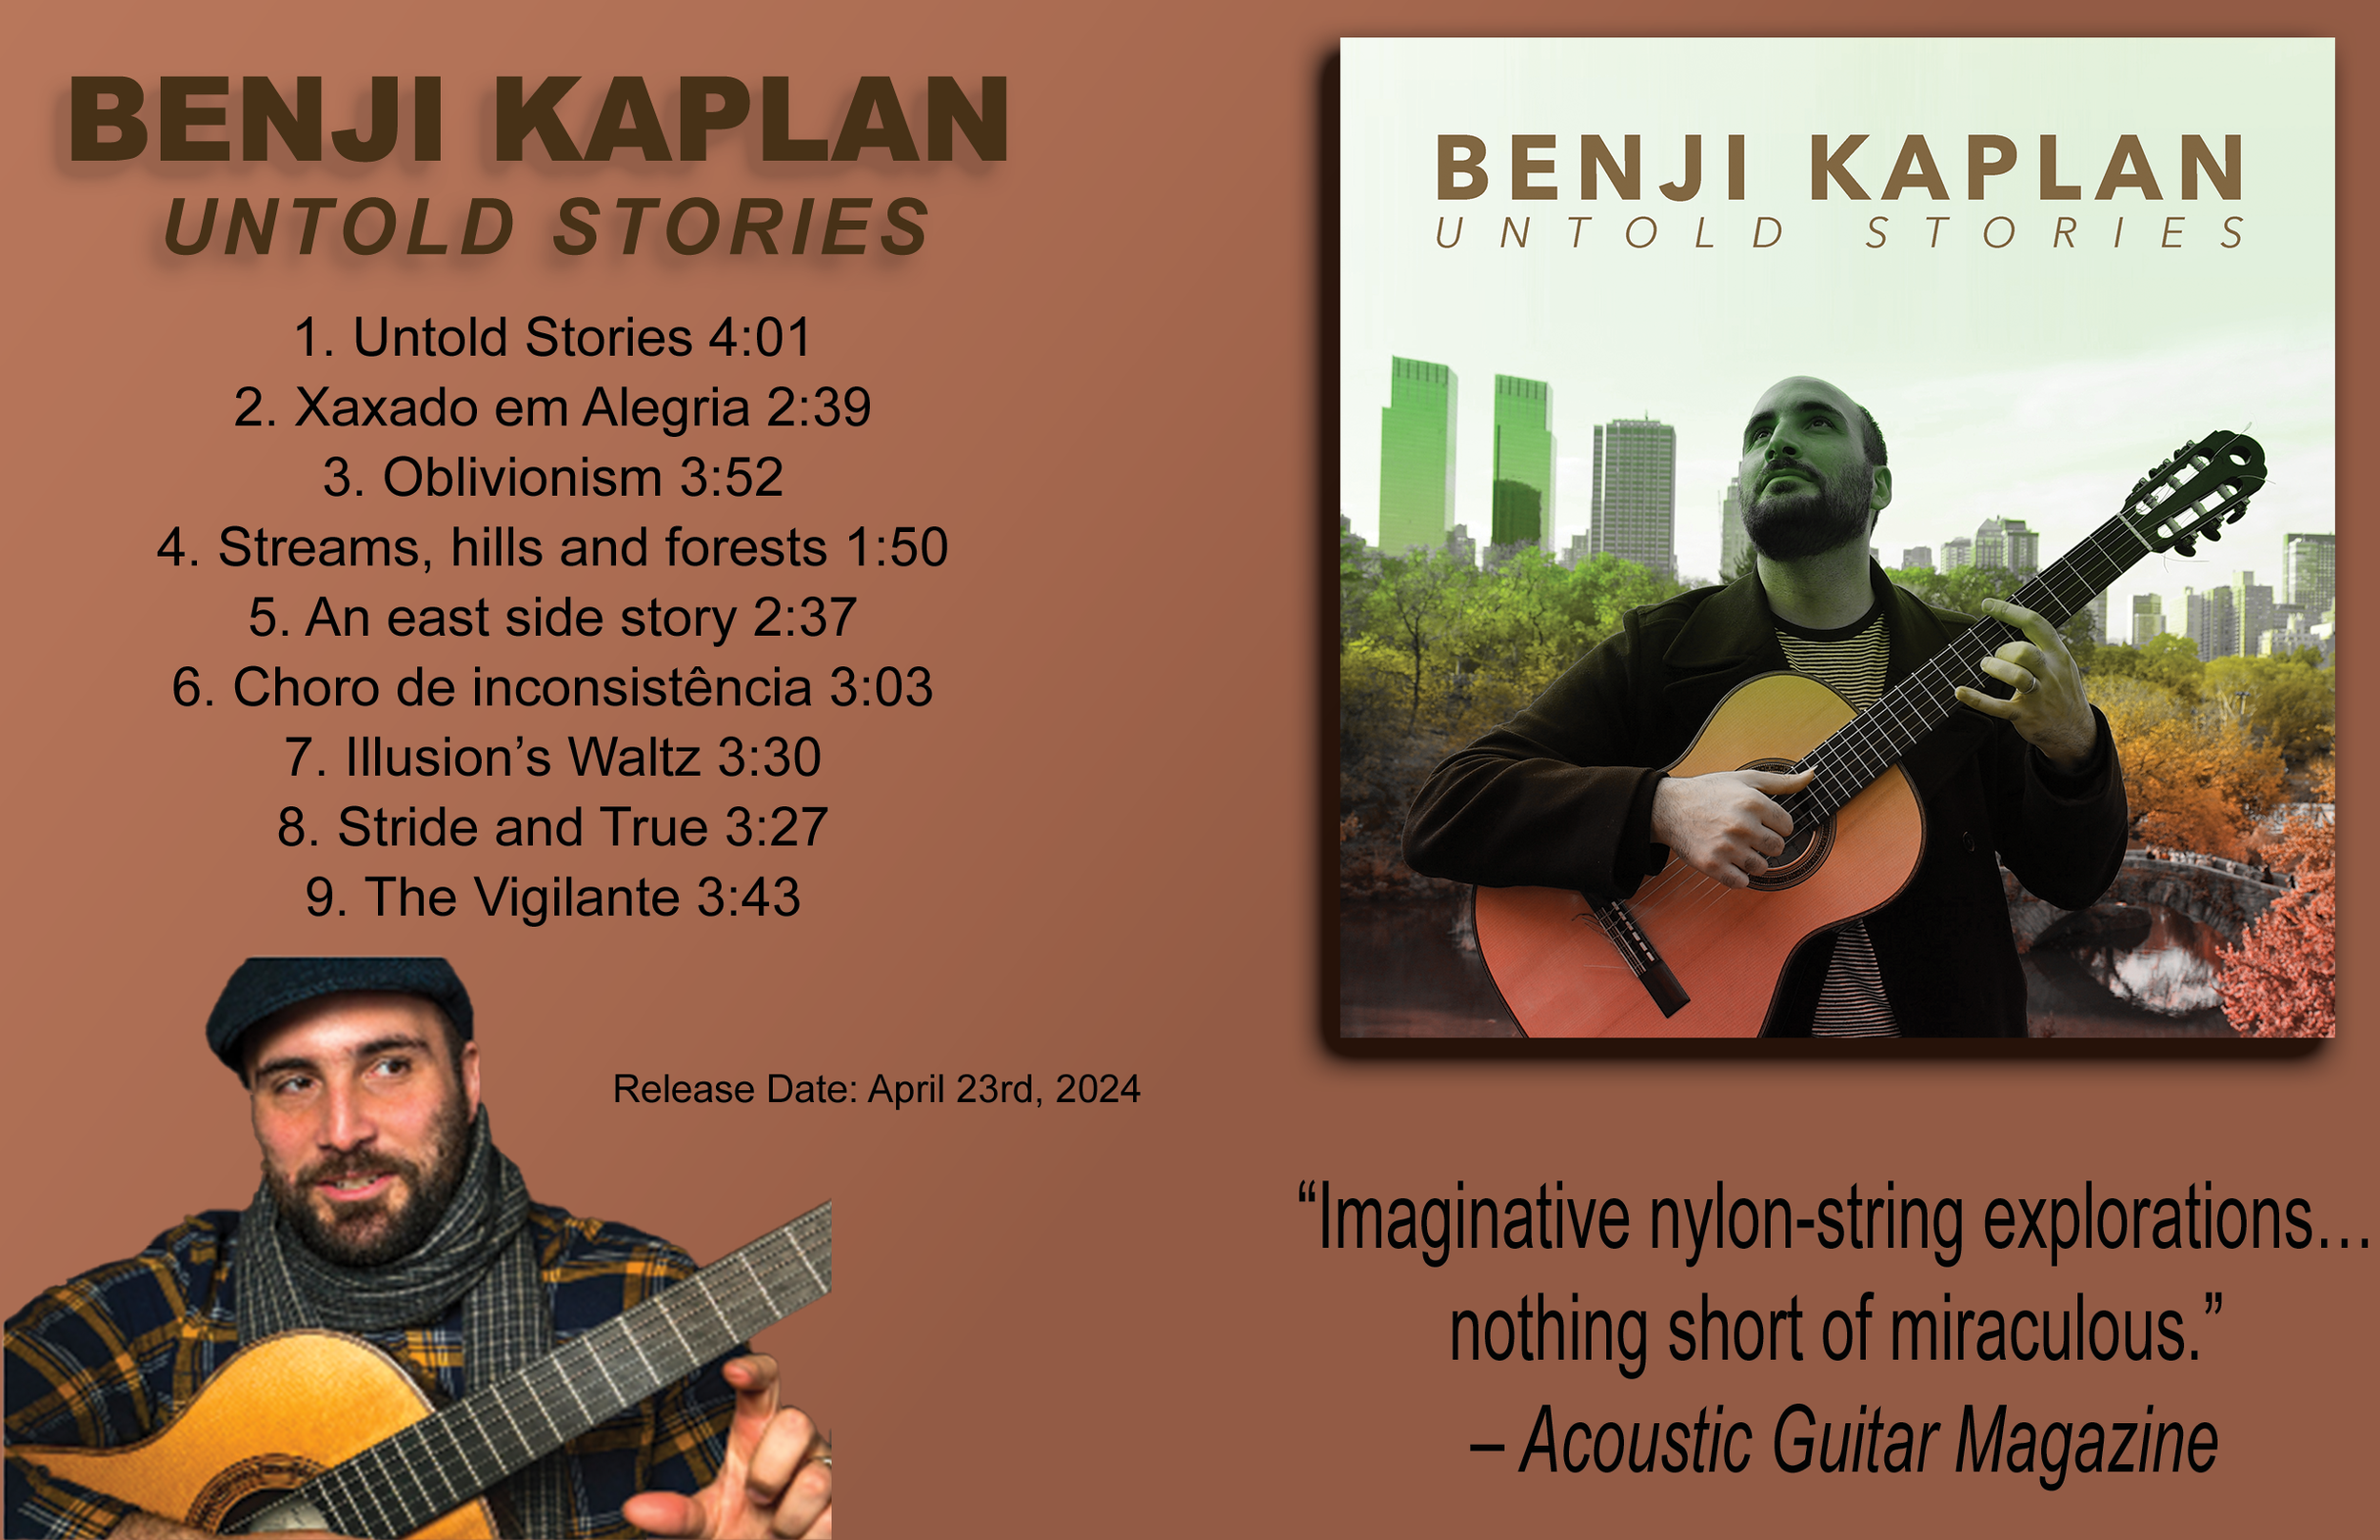 Benji Kaplan Website.png